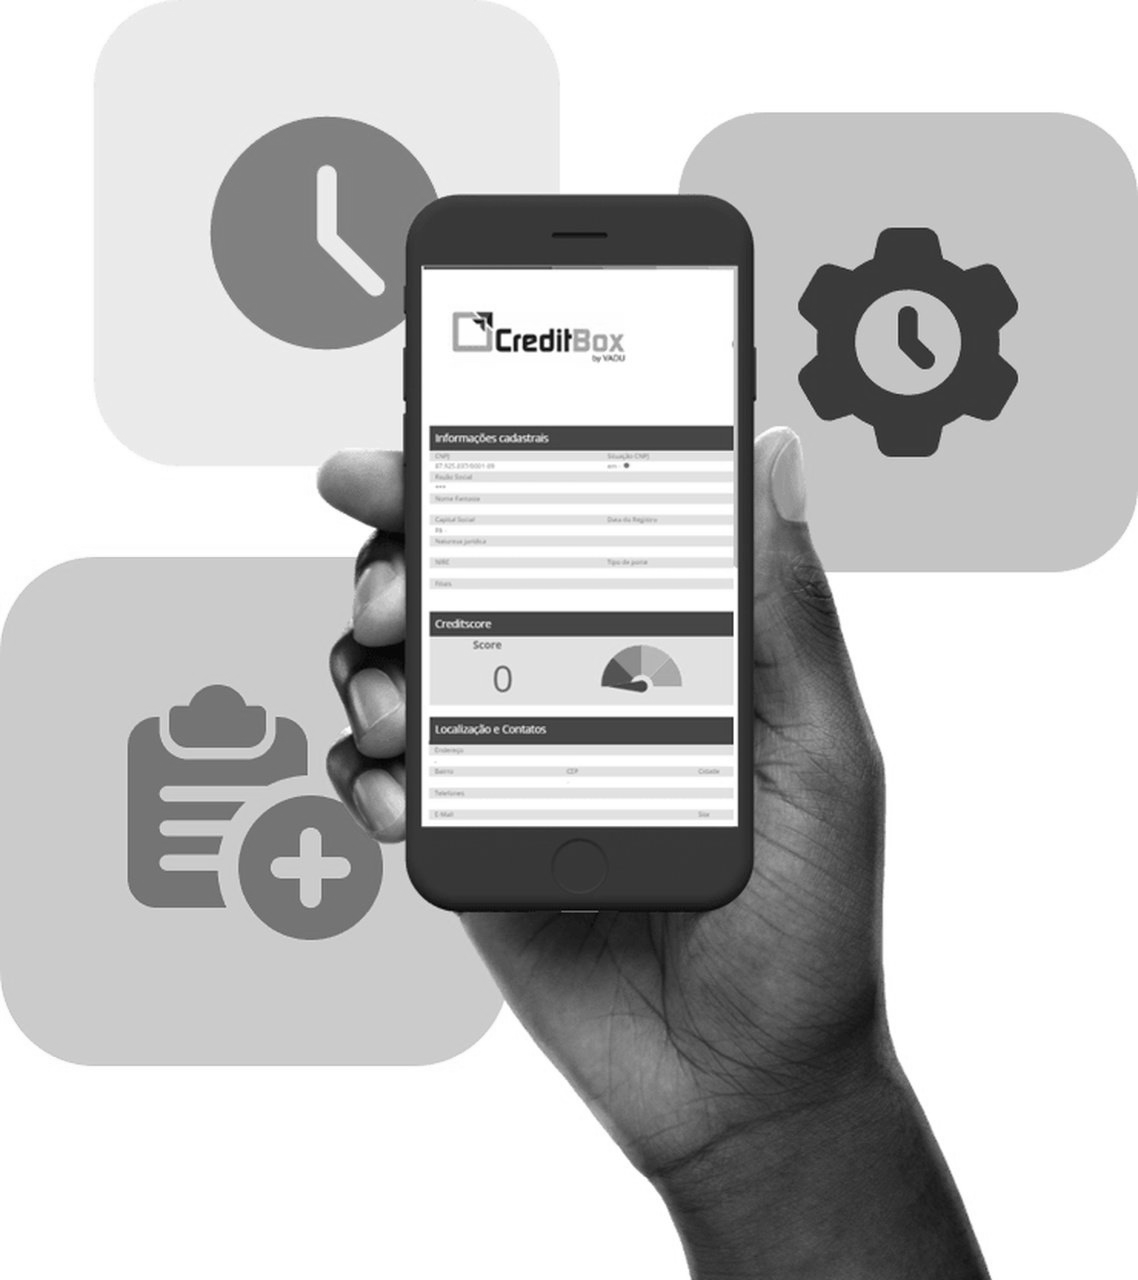 imagem de uma mão segurando um celular com a tela do CreditBox e ícones de relógio, engrenagem e documentos no fundo